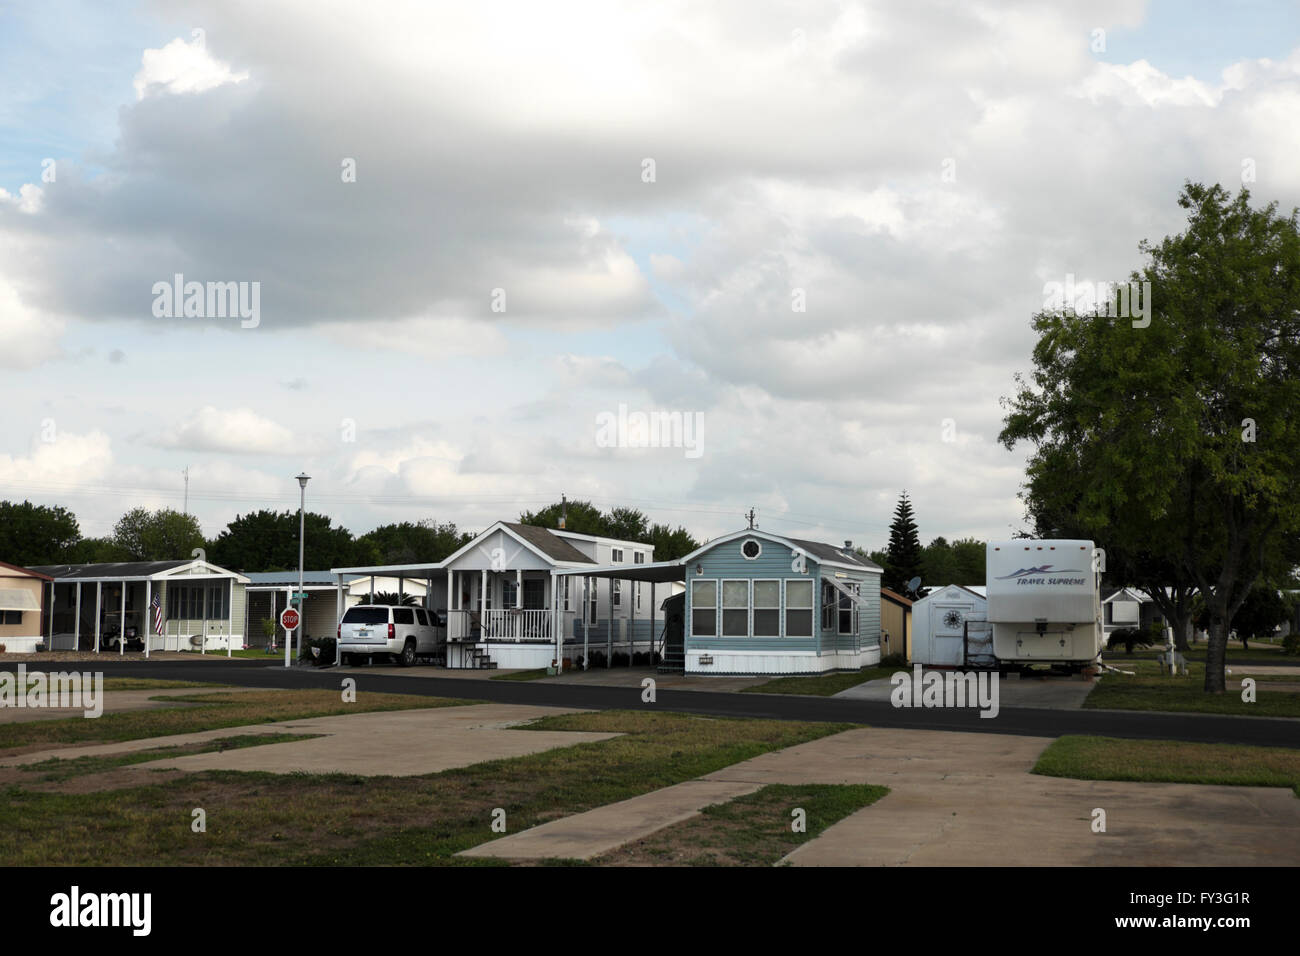 Sattelkupplungen, Mobilheime, Wohnwagen und Park Modelle sitzen gelassen in einem Trailer-Park (RV Resort, Mobilheim Gemeinschaft). Stockfoto